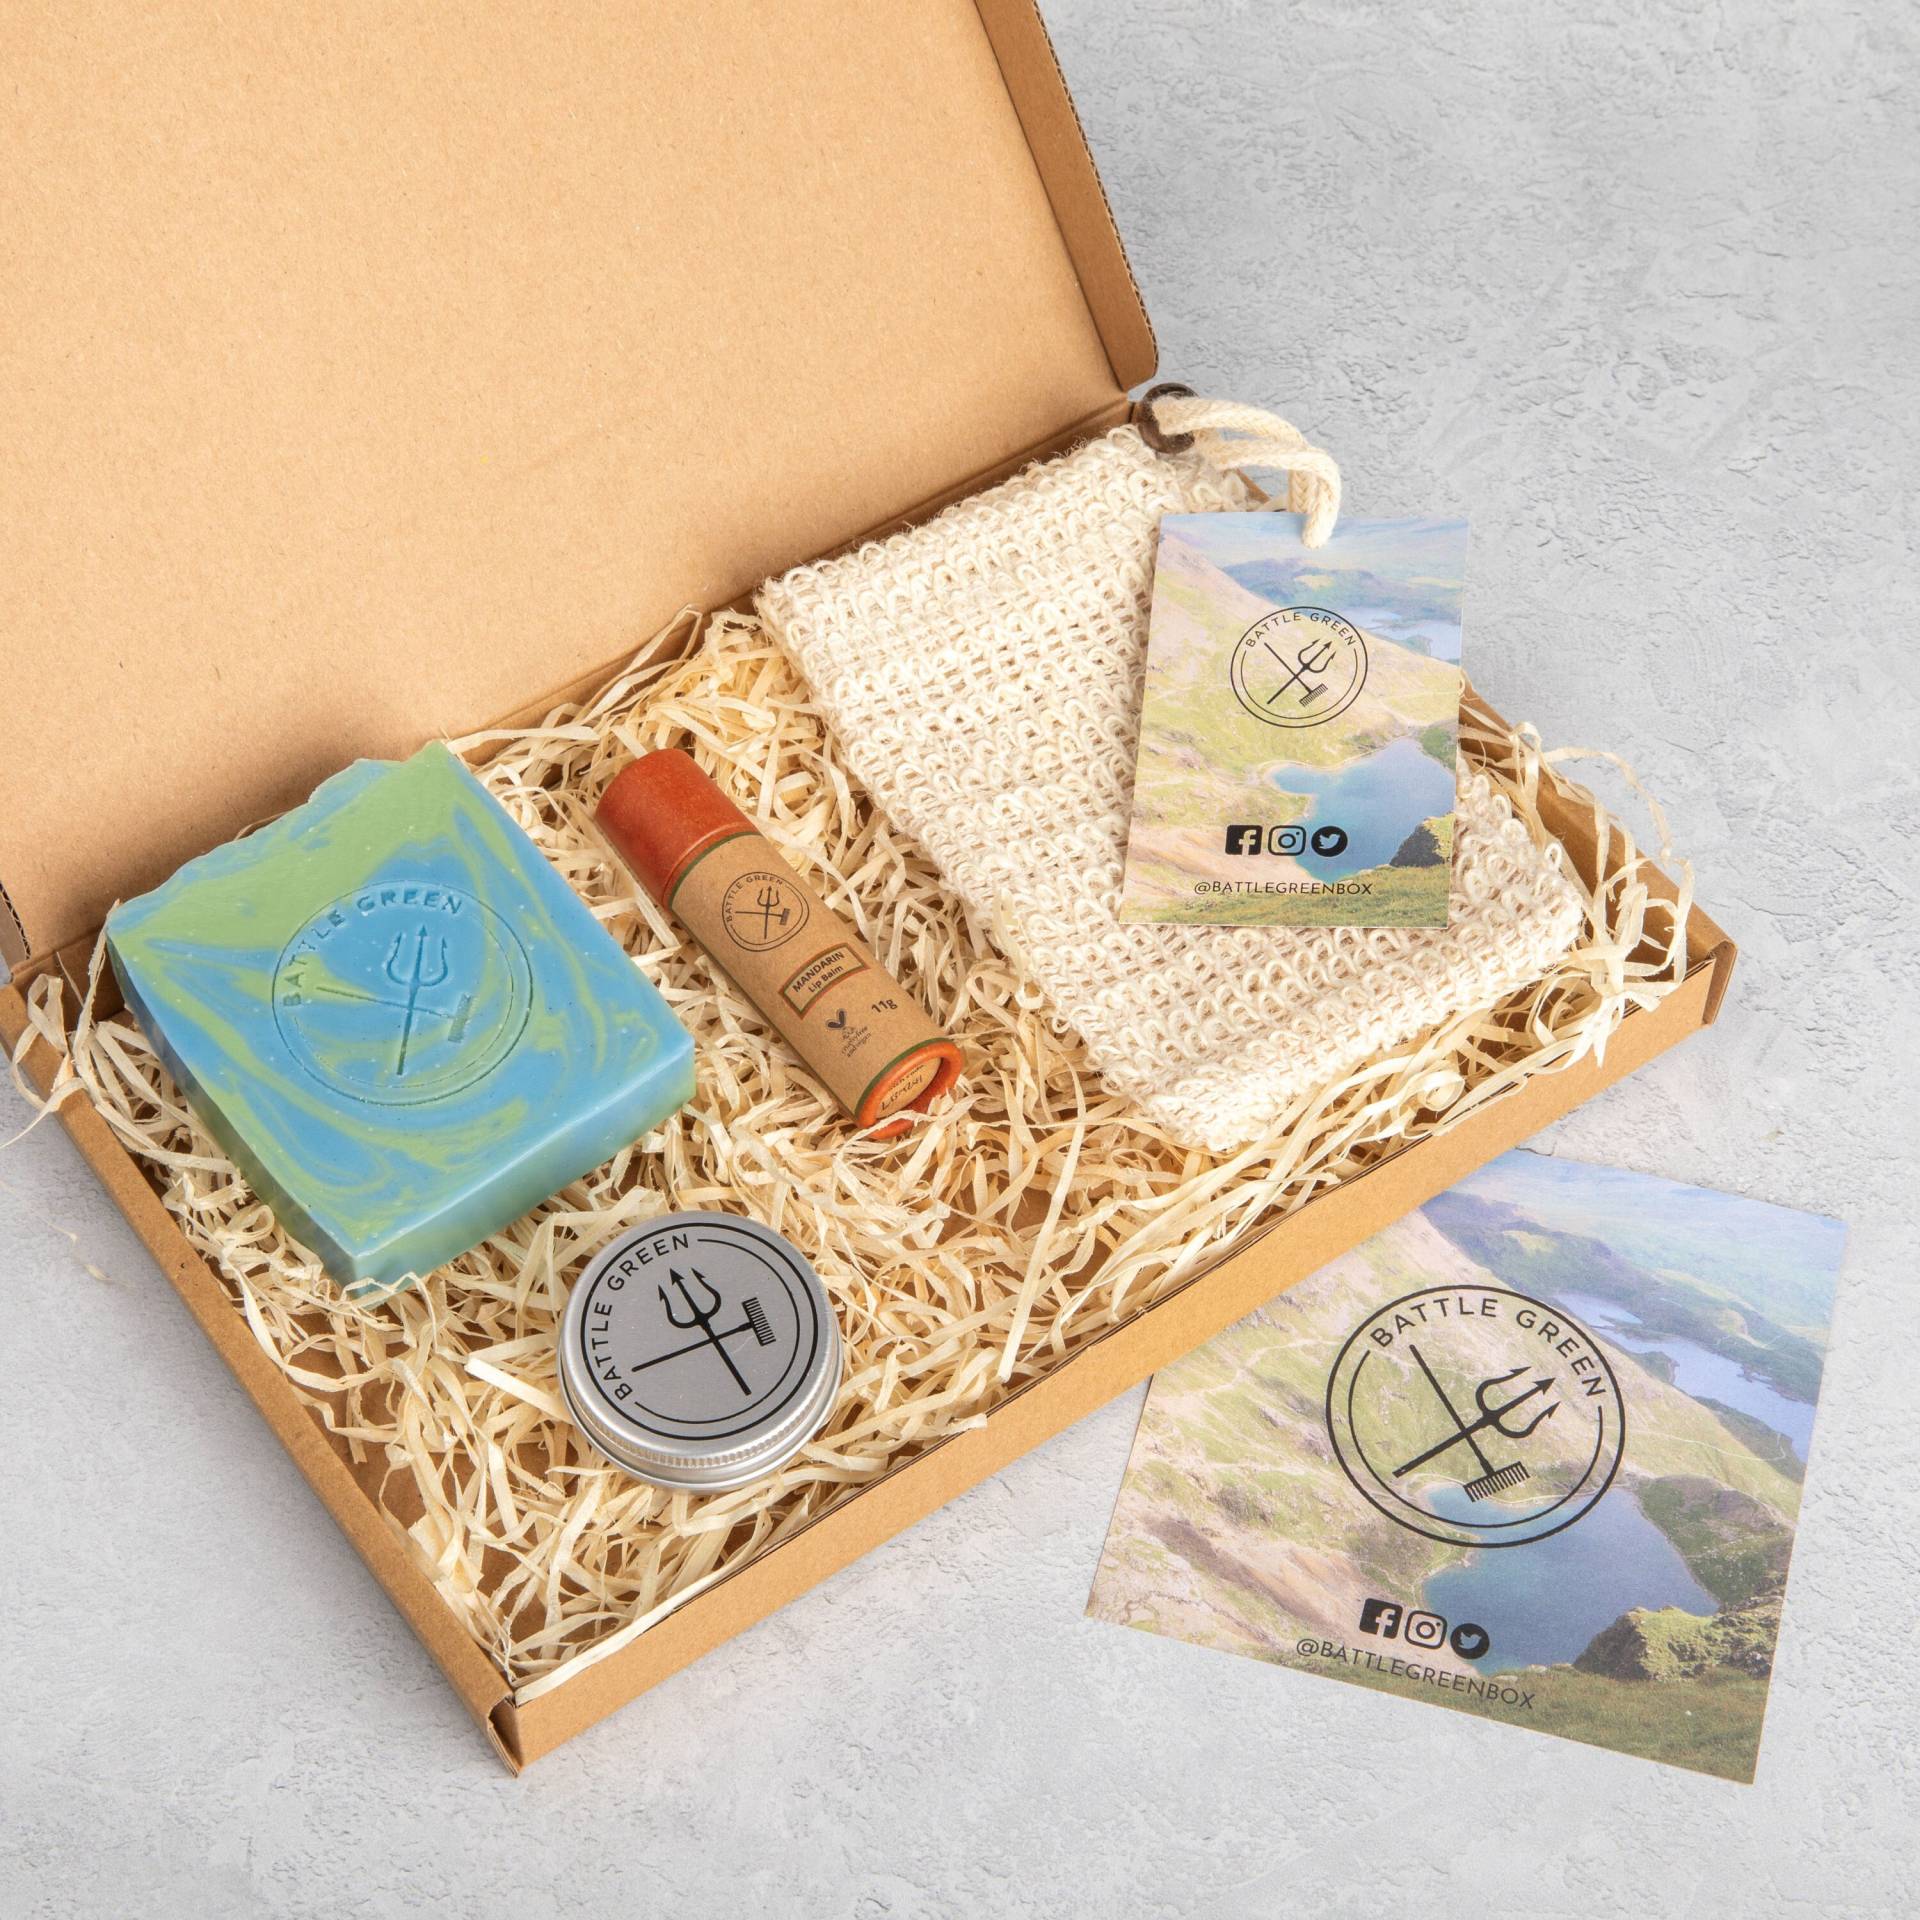 Bad Und Körper Geschenk-Set - Self Care Home Spa Kit Natürliche Vegan Kosmetik Geschenkbox von BattleGreenBox